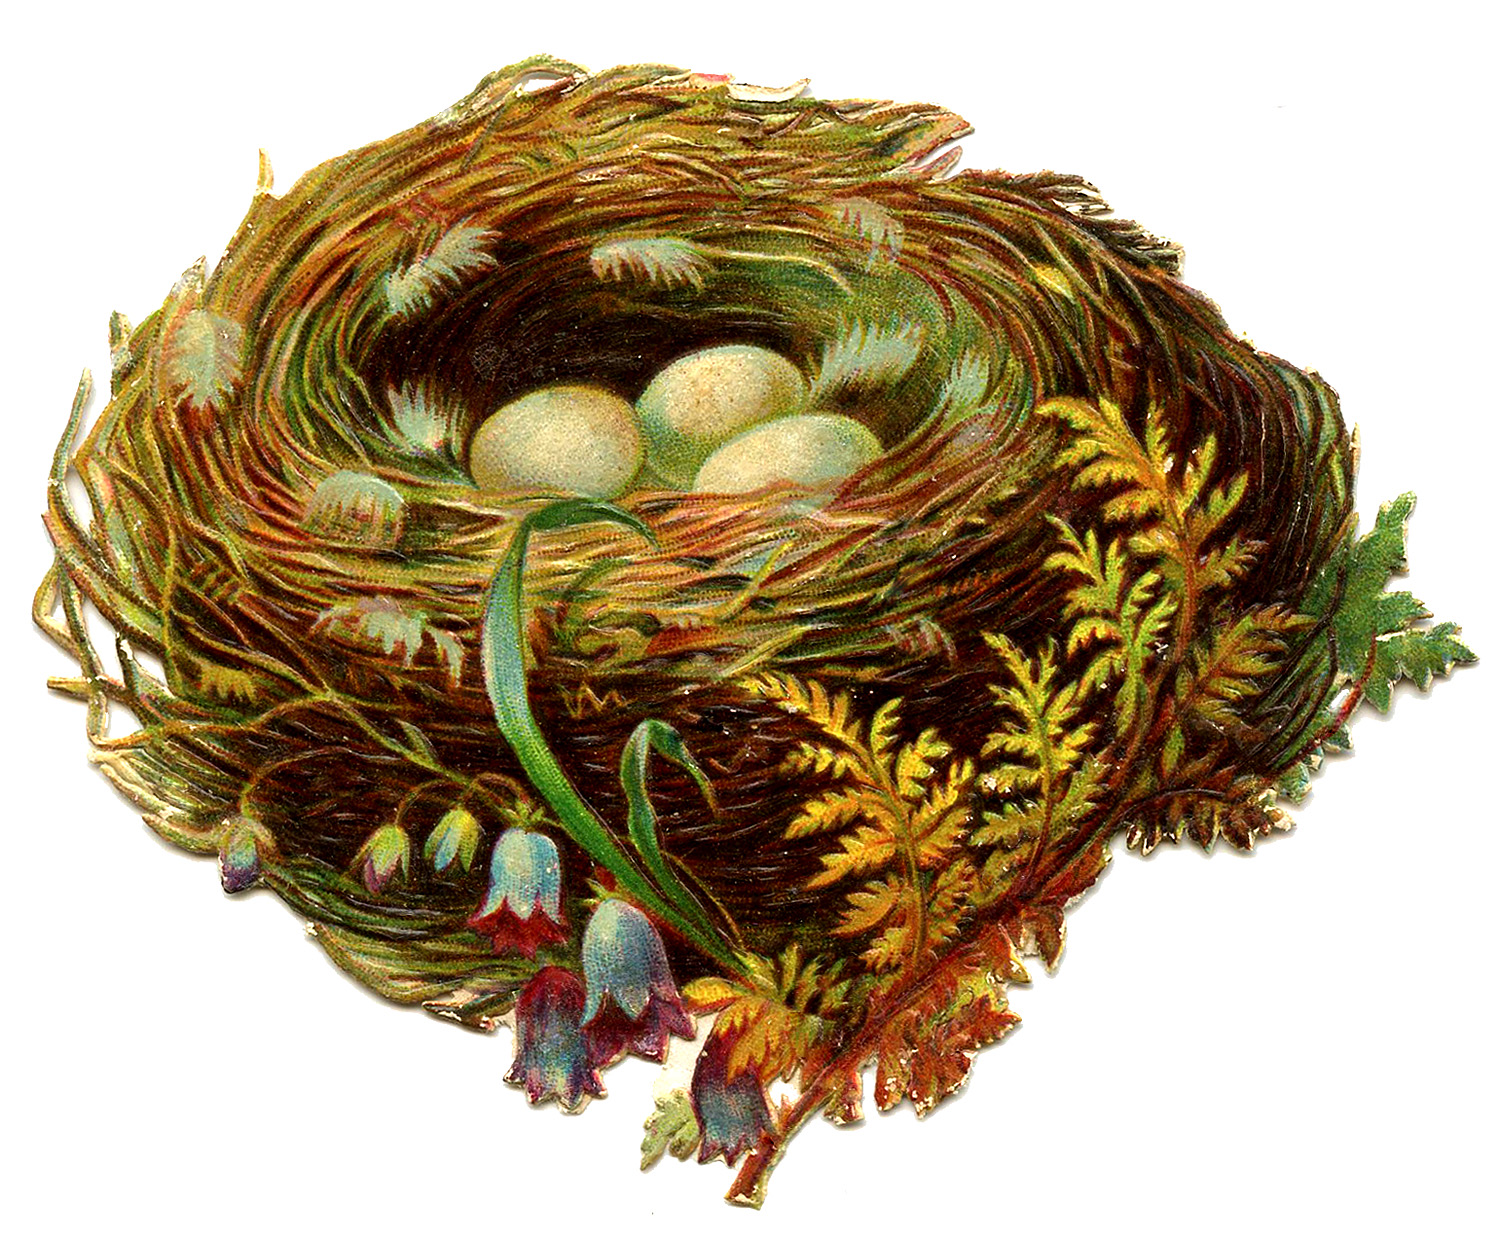 nest images clip art - photo #16